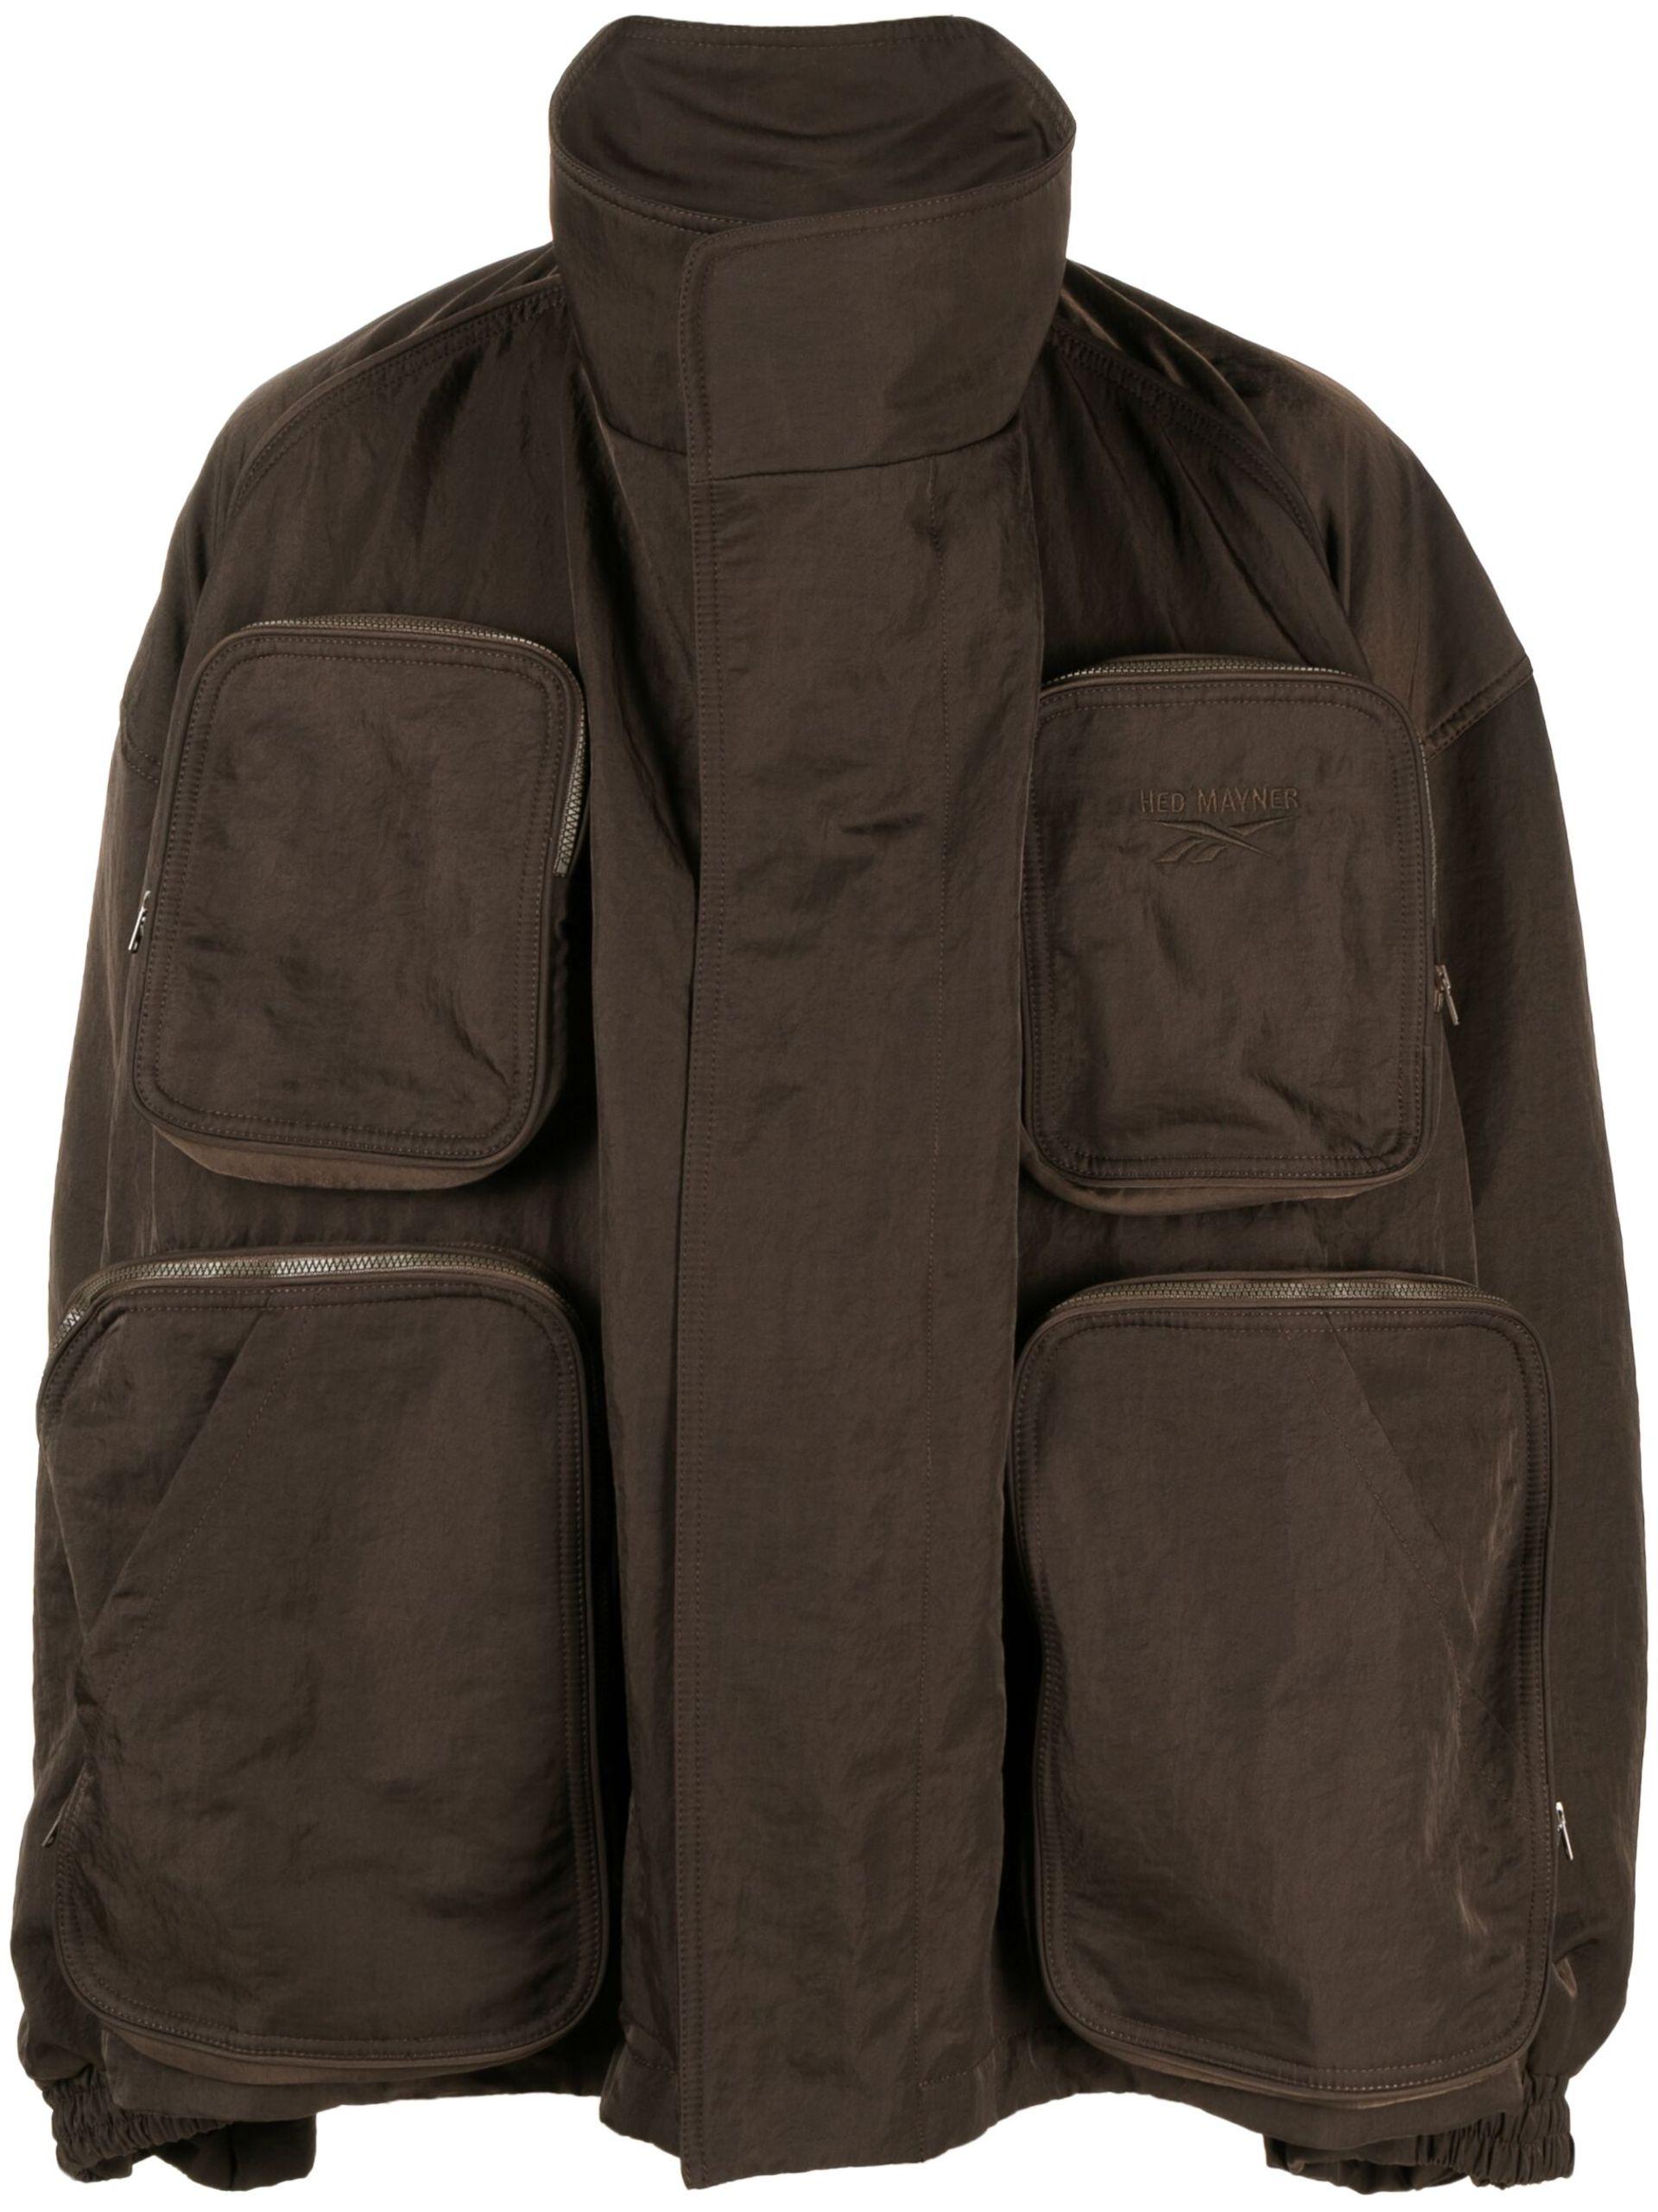 Reebok X Hed Mayner Parka Jacket in Brown for Men | Lyst